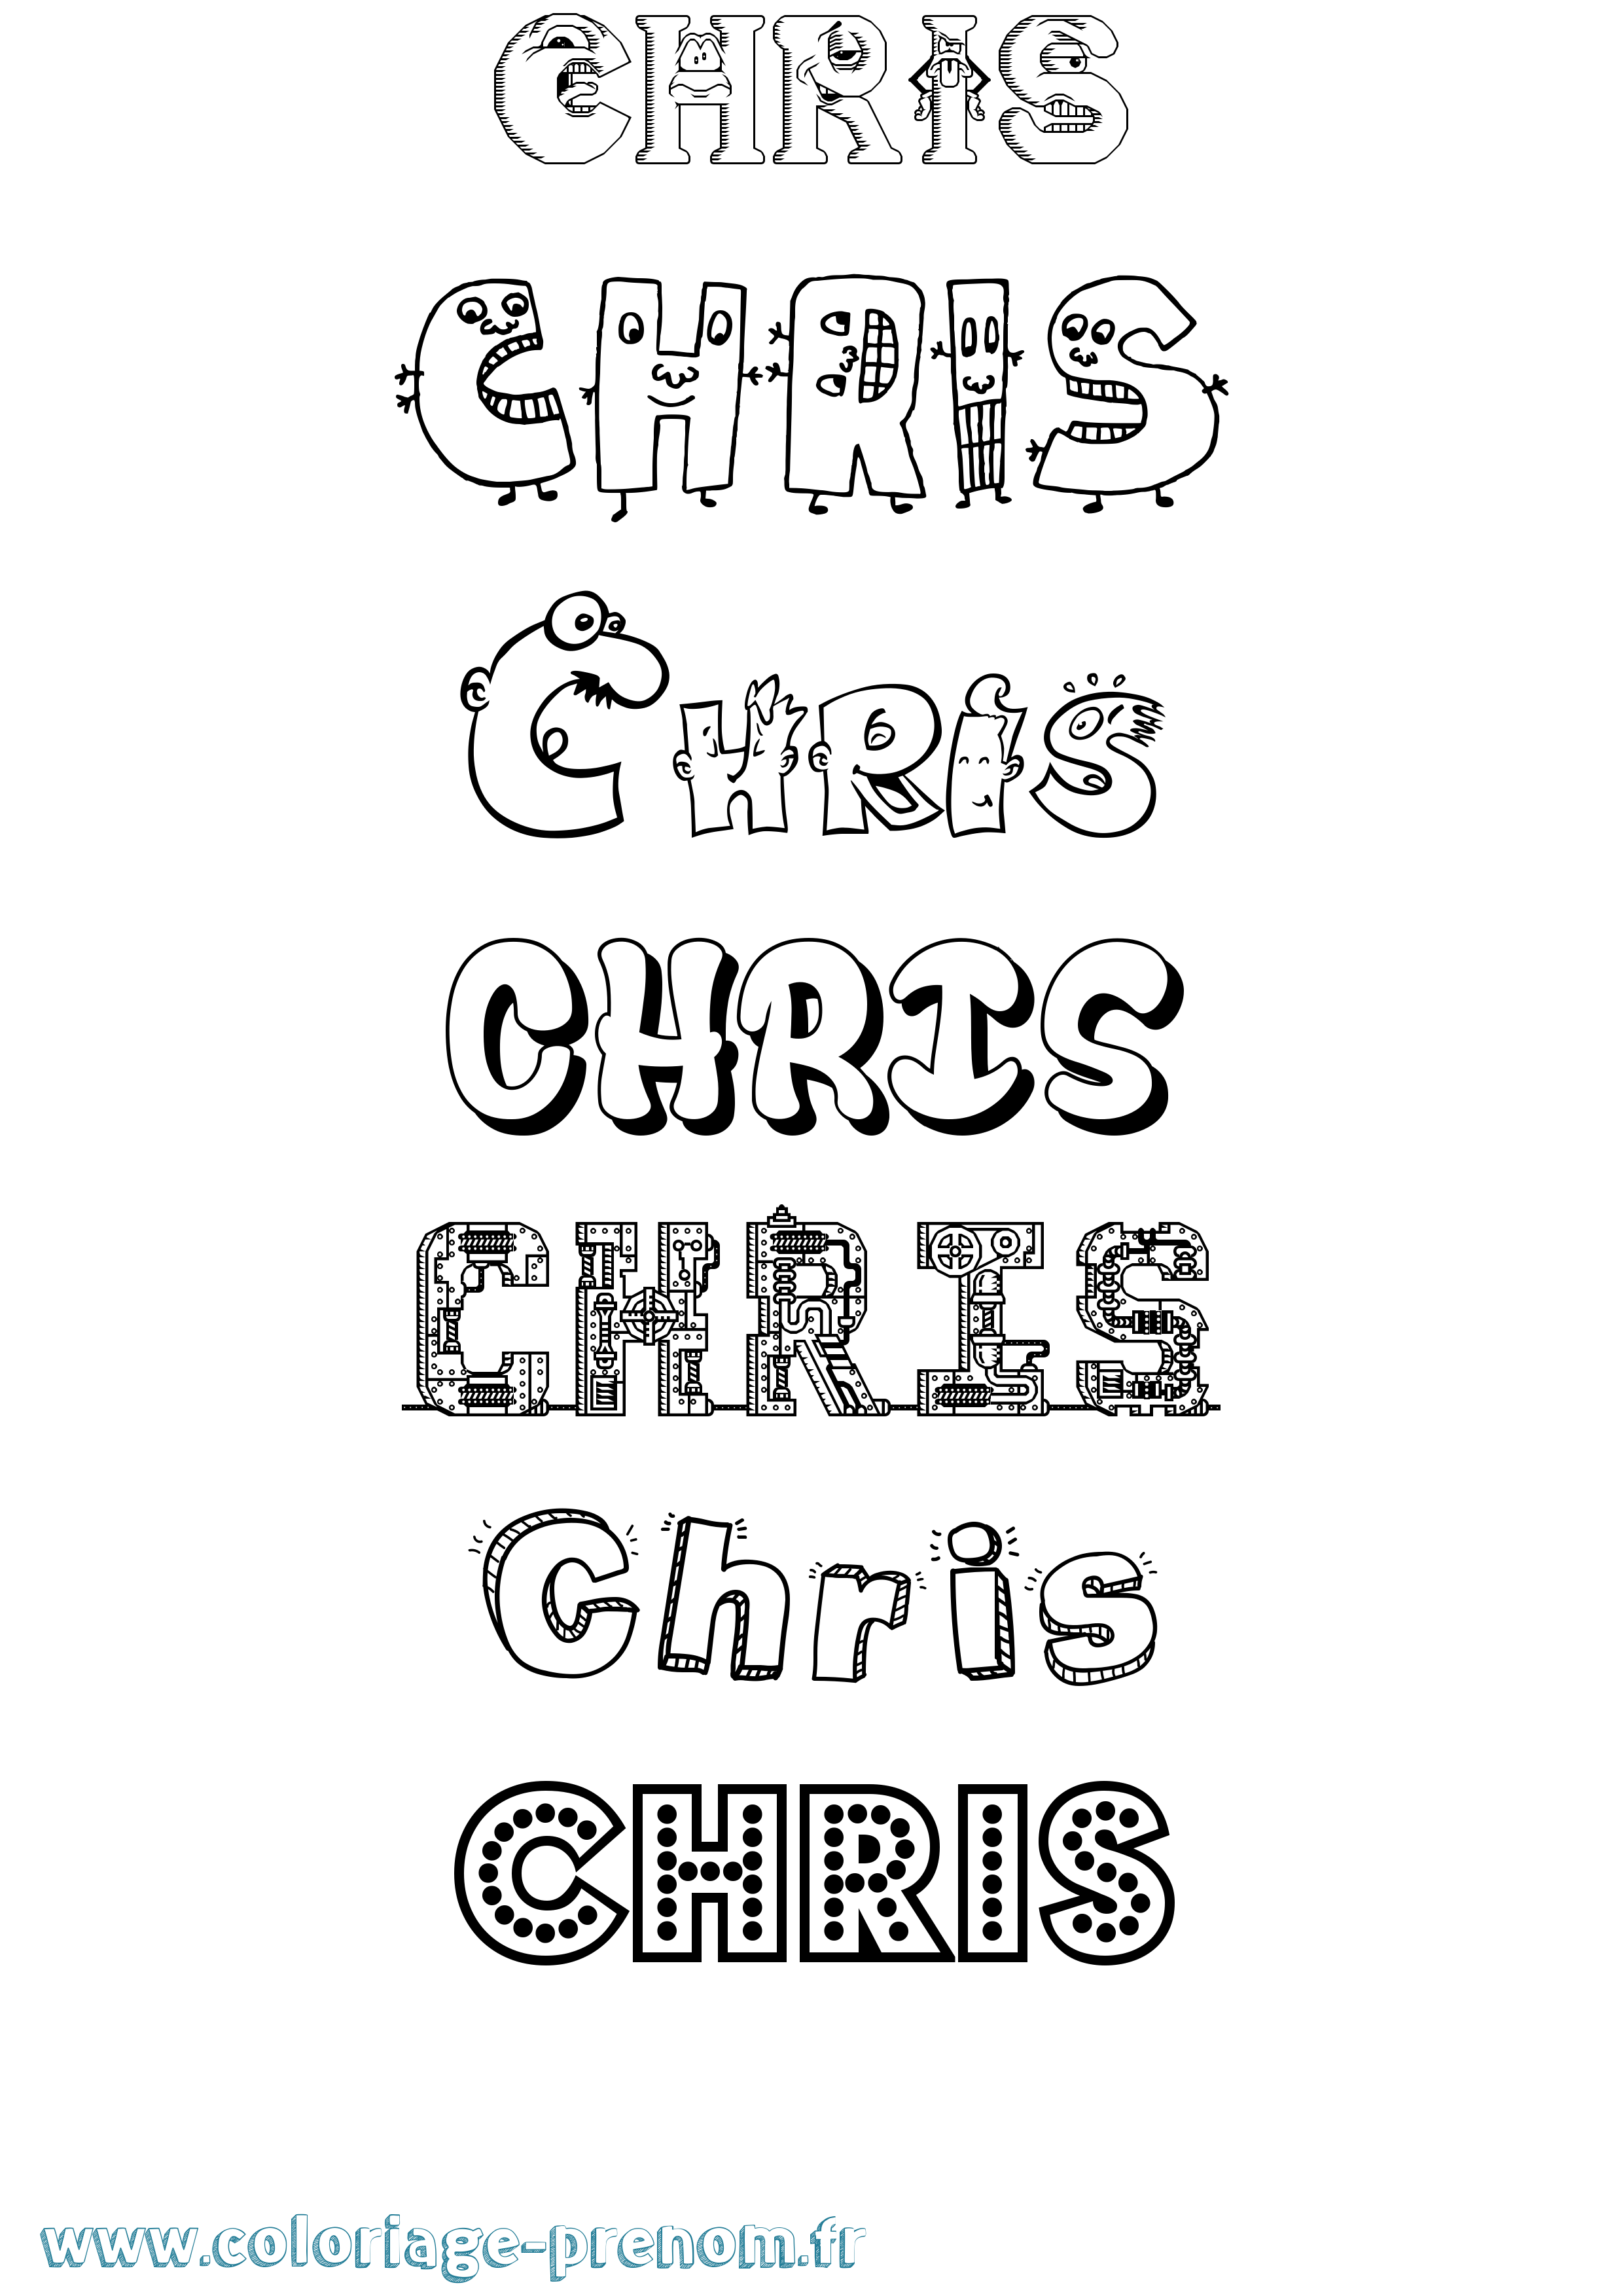 Coloriage prénom Chris